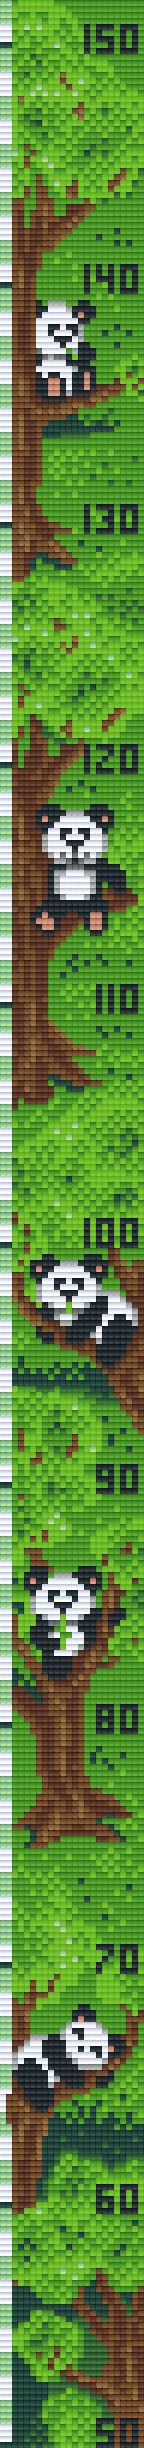 Pixelhobby Klassik - Maßband Pandas